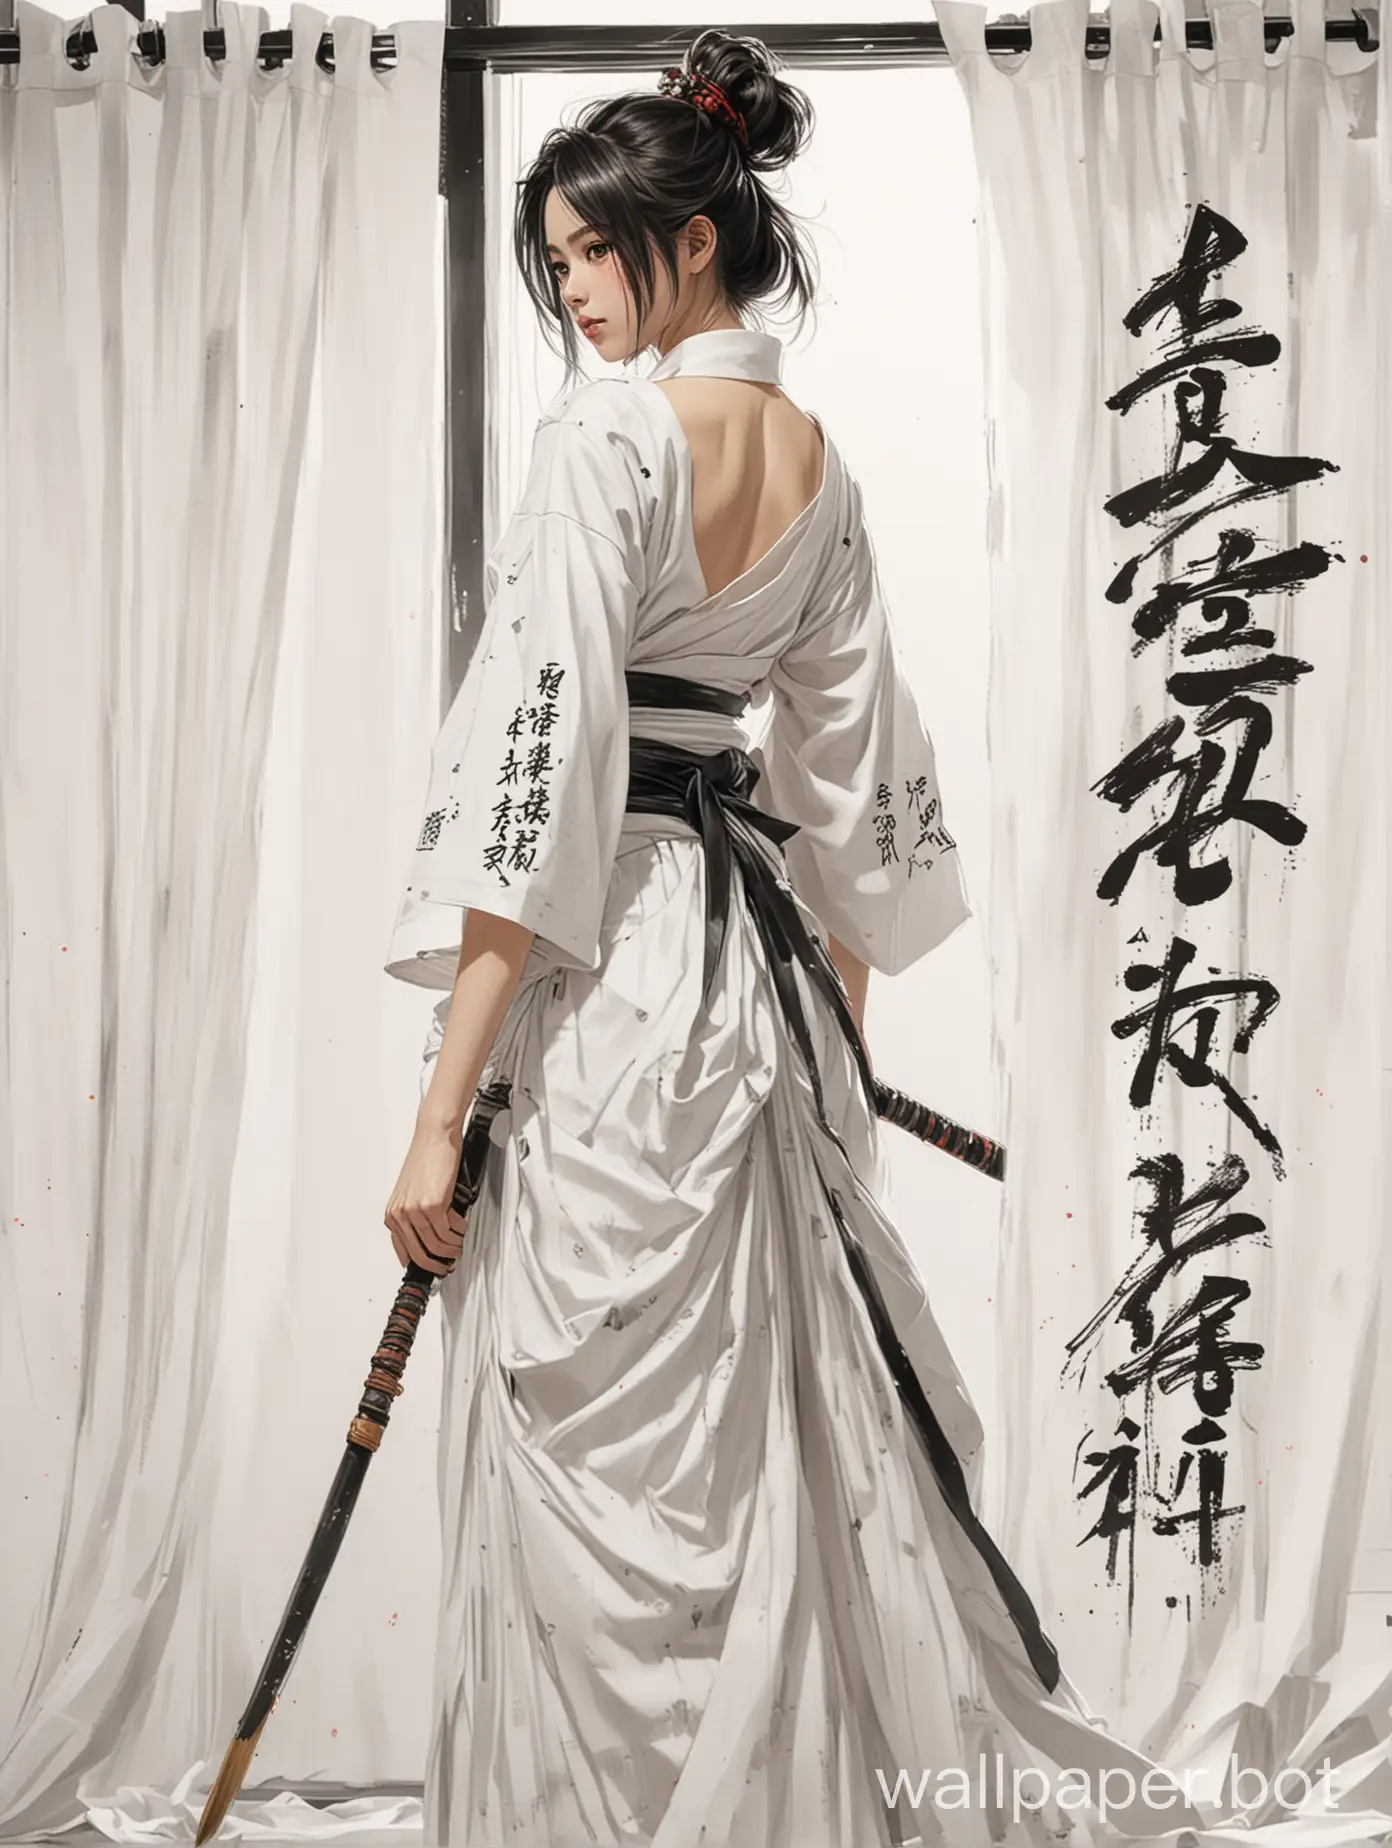 Elegant-Japaninspired-Girl-in-White-Dress-Sketching-Samurai-on-White-Background